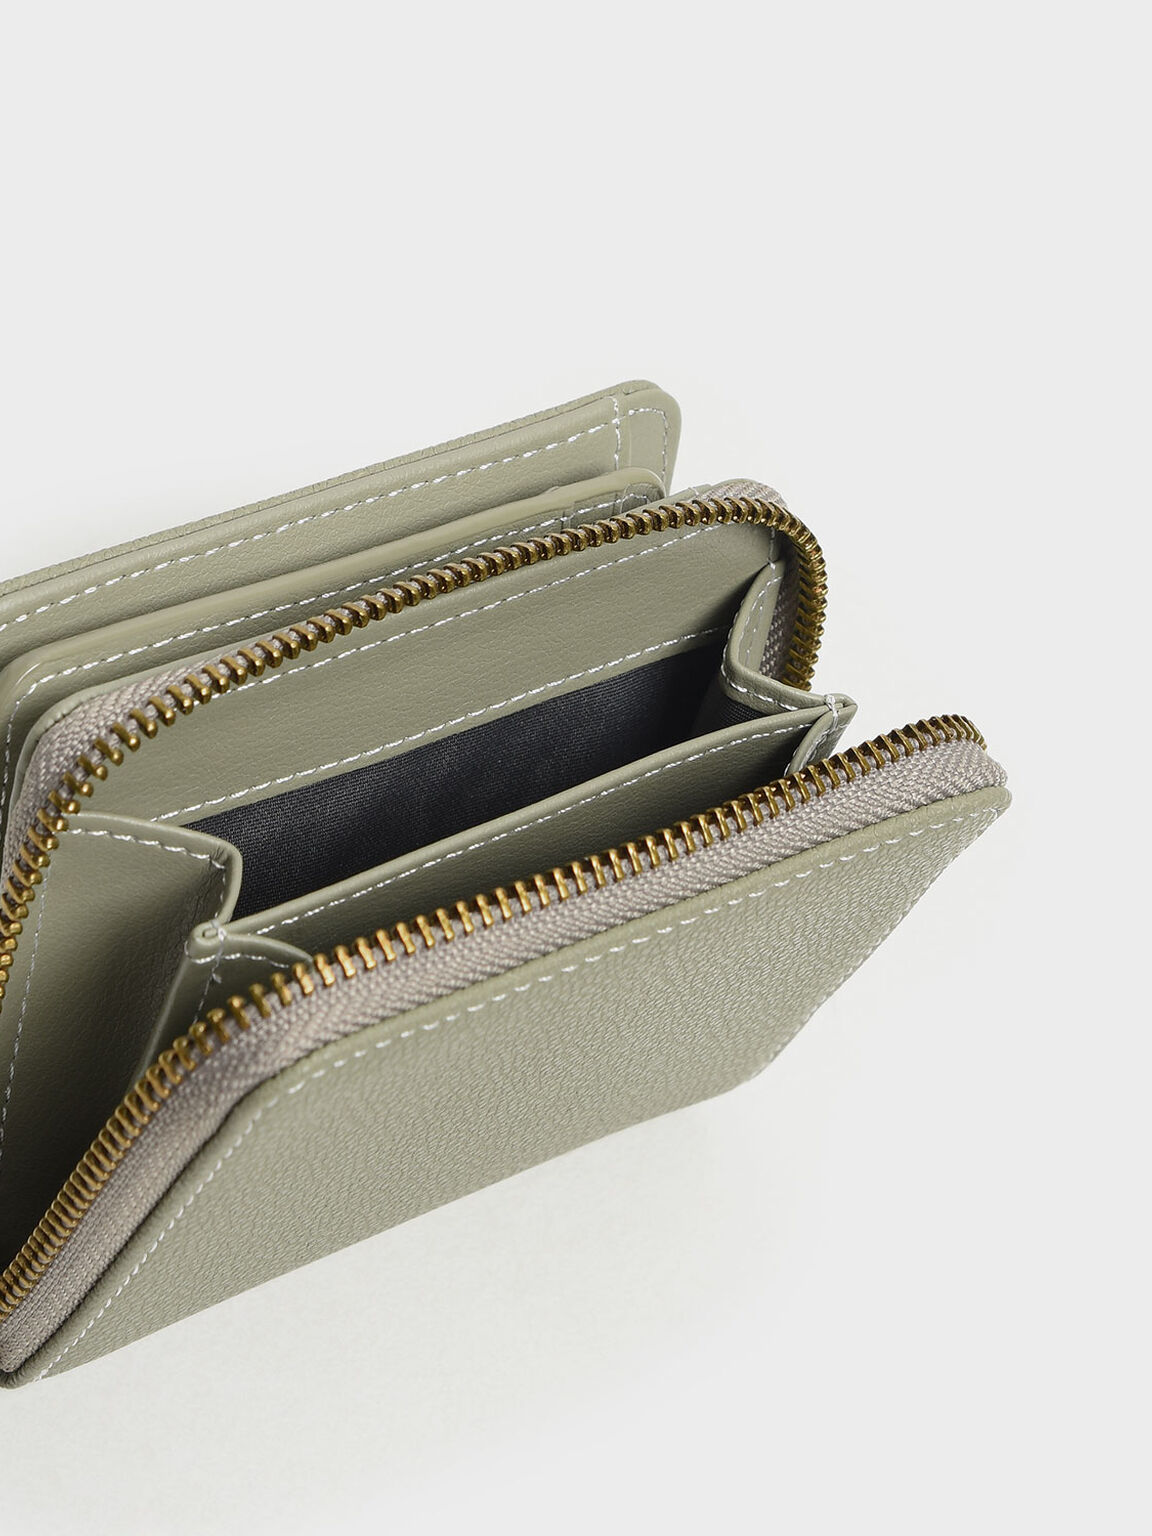 Classic Zip Mini Wallet, Sage Green, hi-res